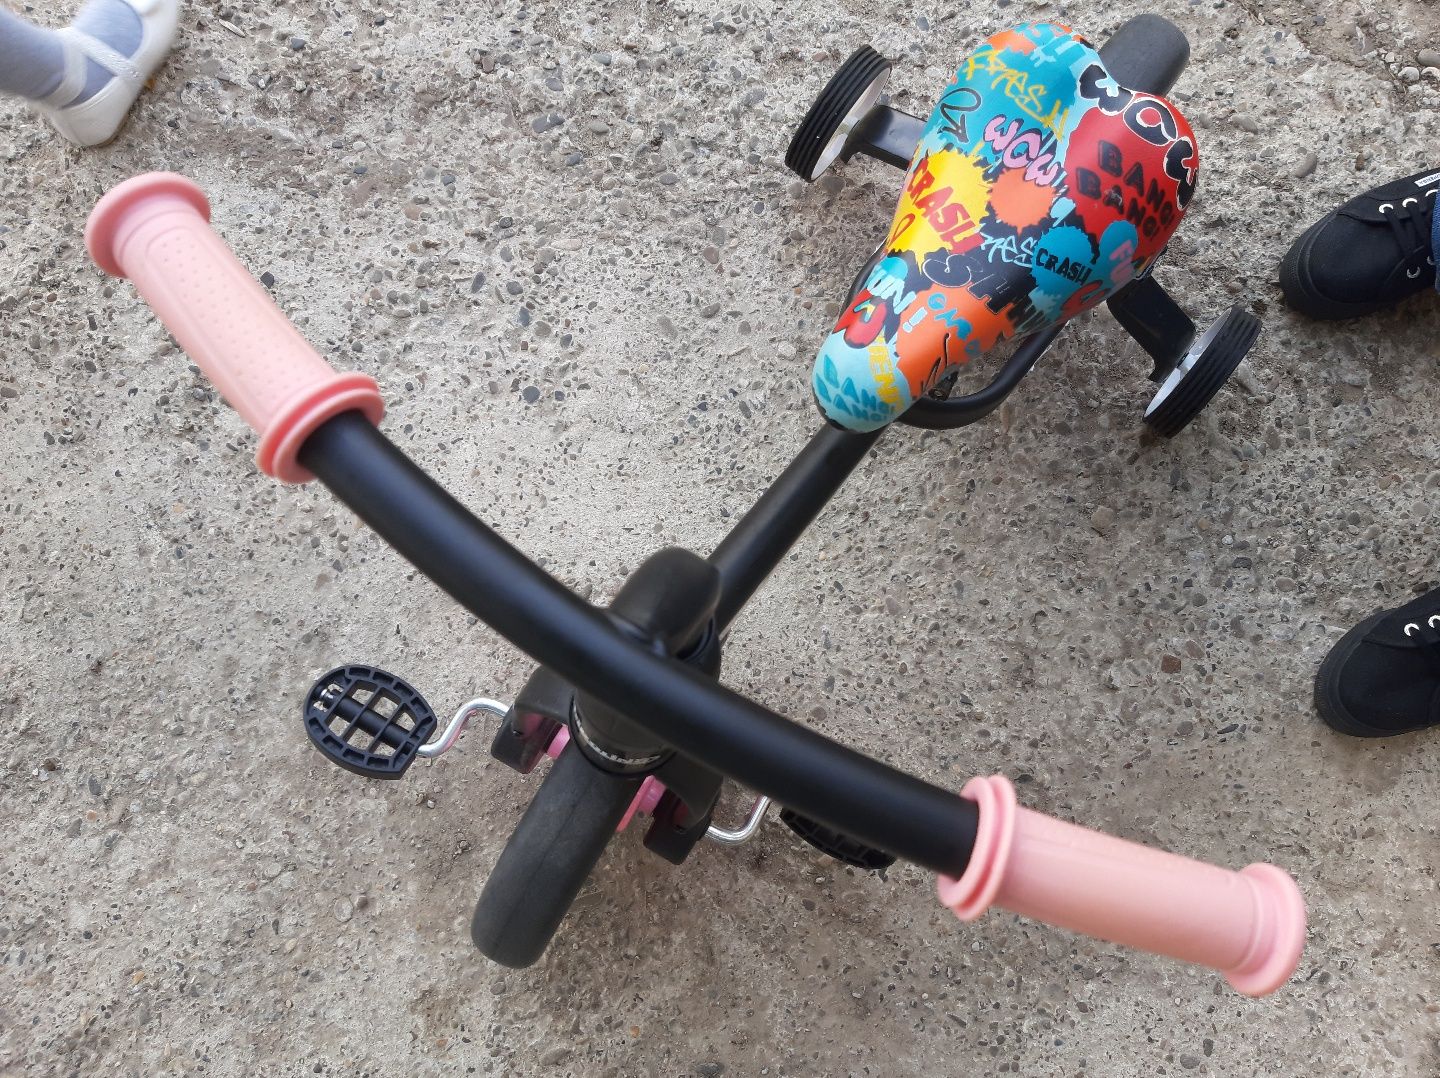 Vand Bicicleta de fetițe 3in1